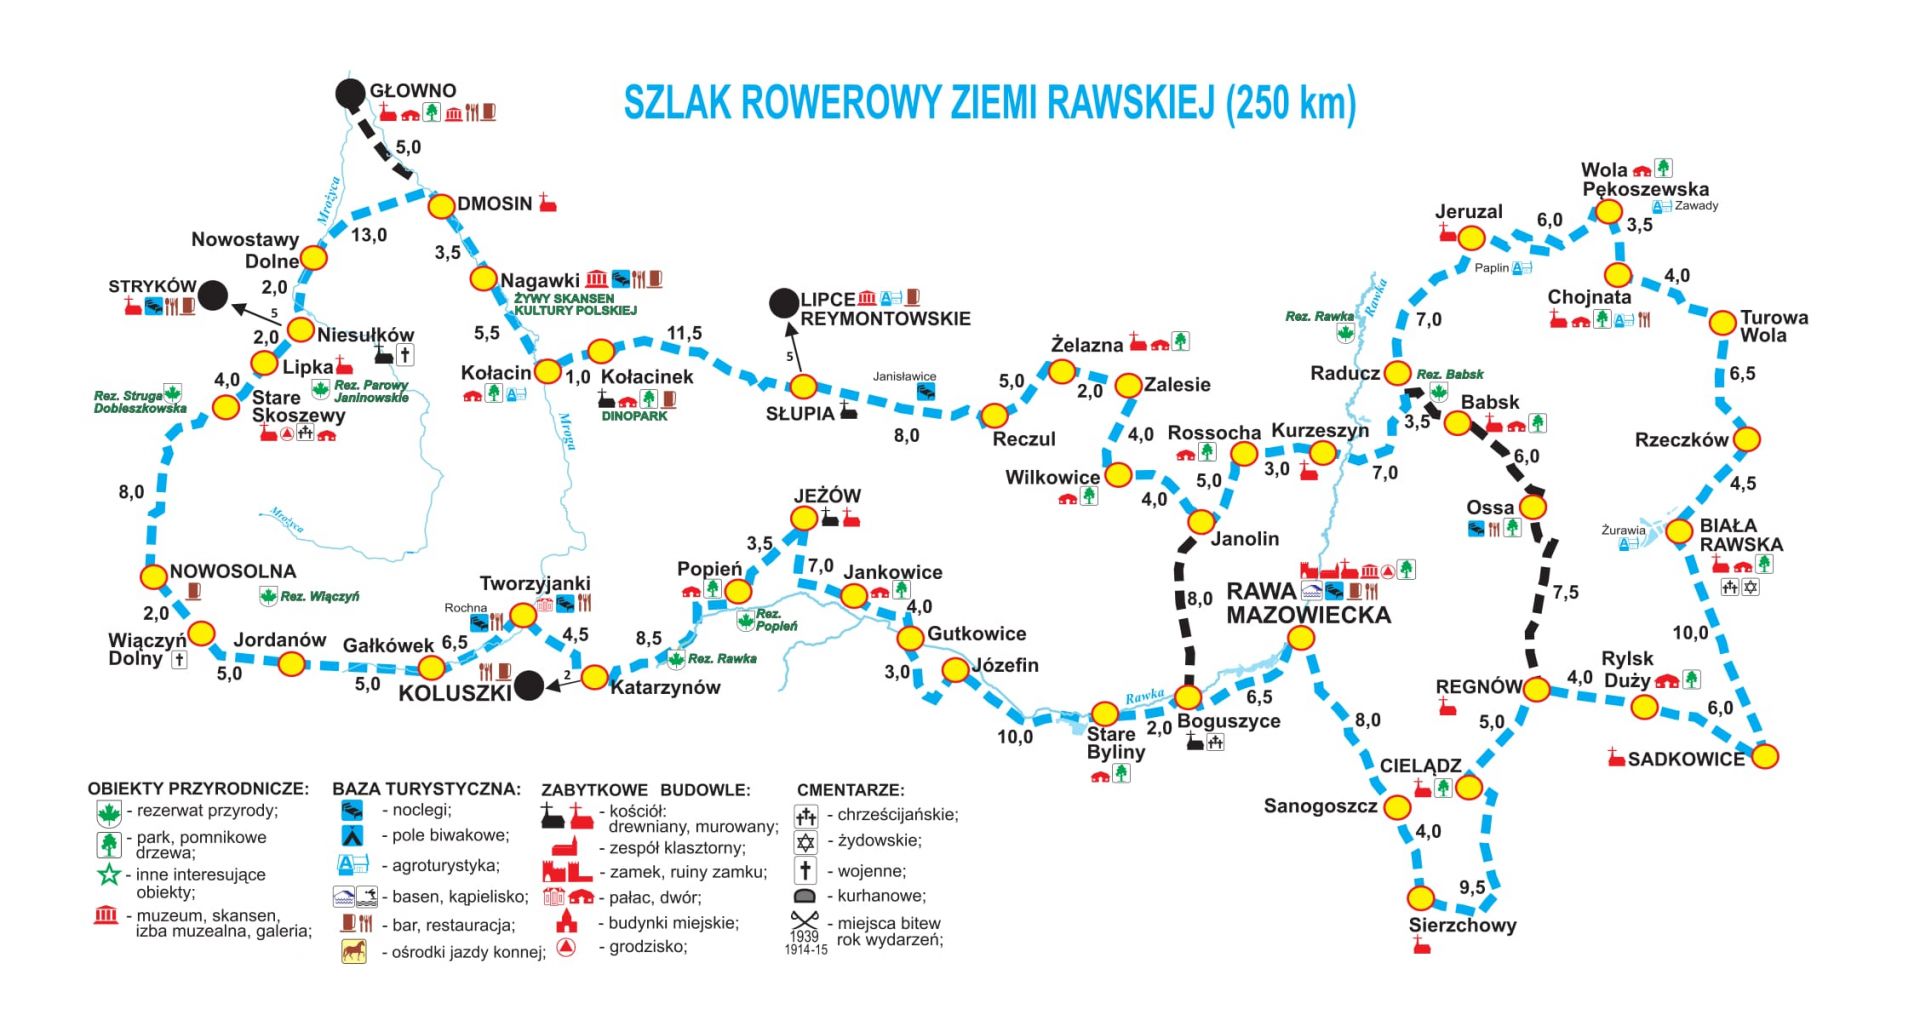 Szlak Ziemi Rawskiej. Źródło: www.lodzkie.pl